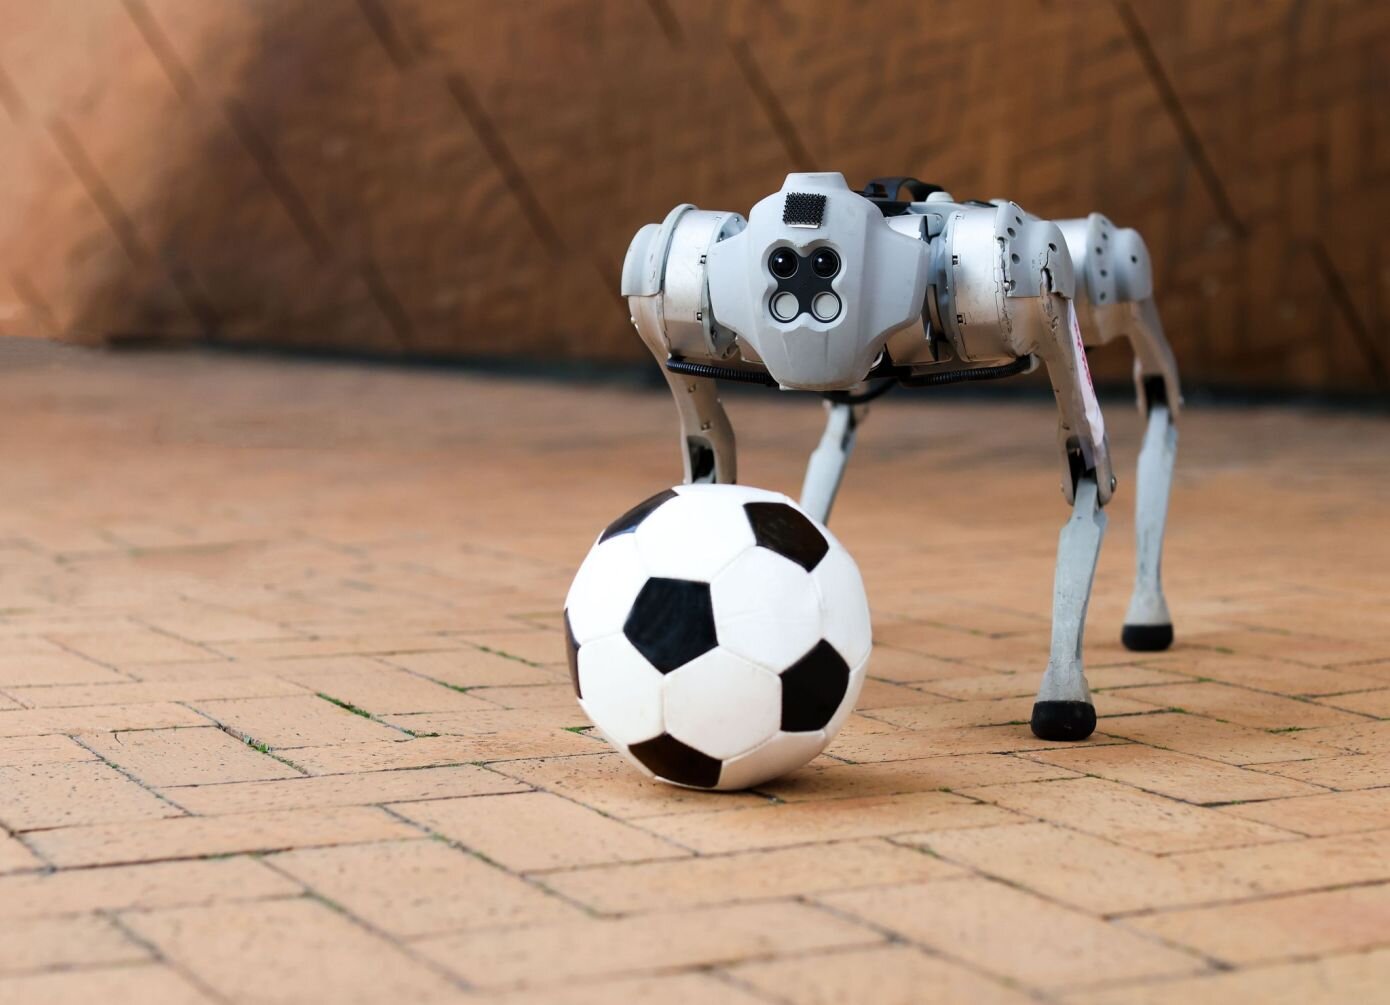 Αυτό το τετράποδο ρομπότ παίζει ποδόσφαιρο στο γρασίδι, στη λάσπη ή στην άμμο